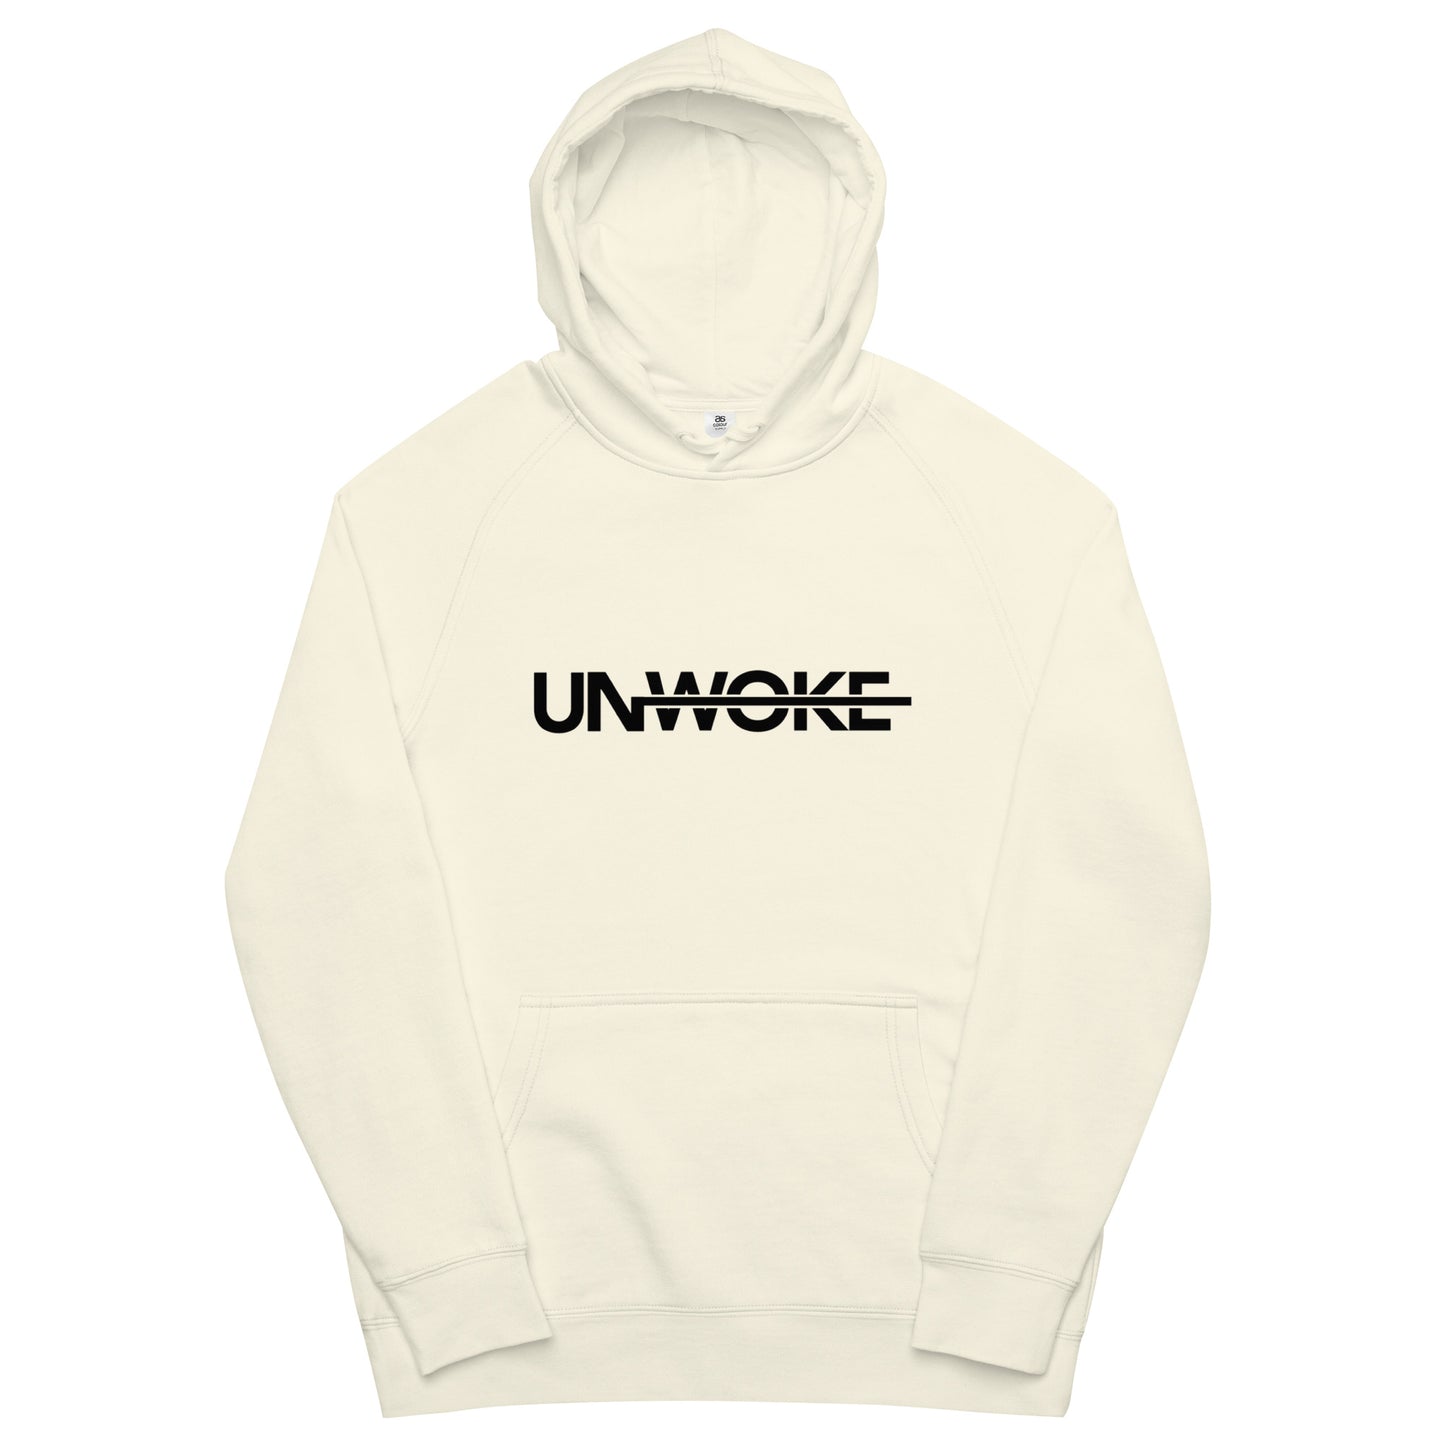 Unwoke Minimalist Unisex kangaroo pocket hoodie